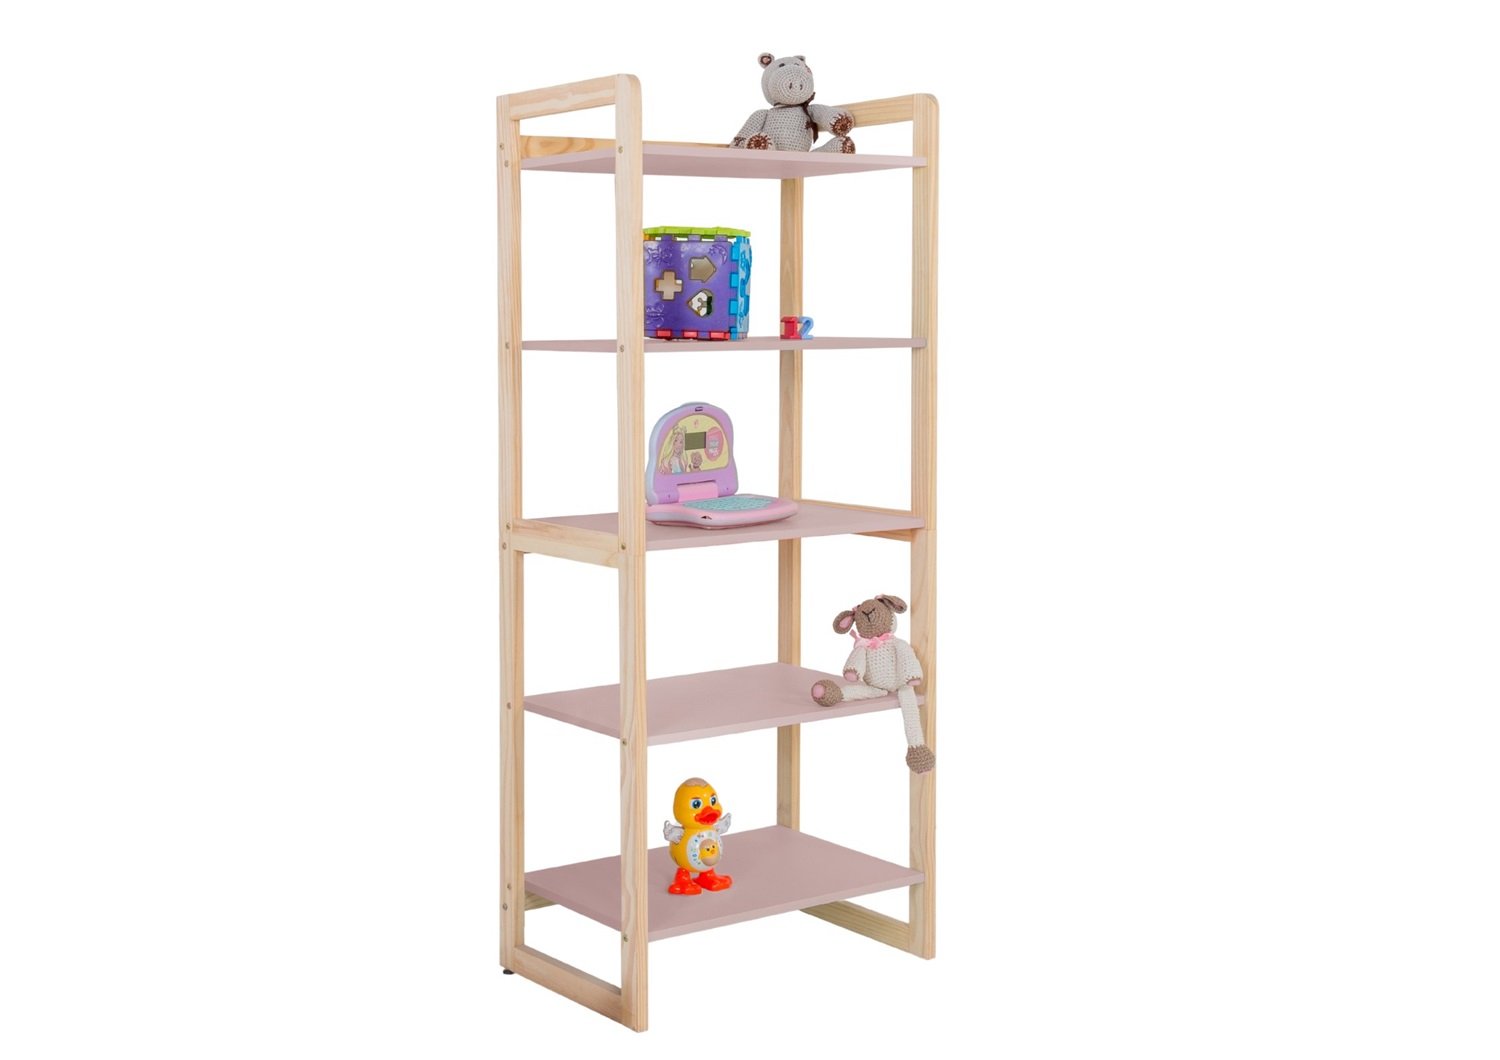 Estante Multiuso Prateleiras Organizador de Livros e Brinquedos Infantil Colore 150cm:rose